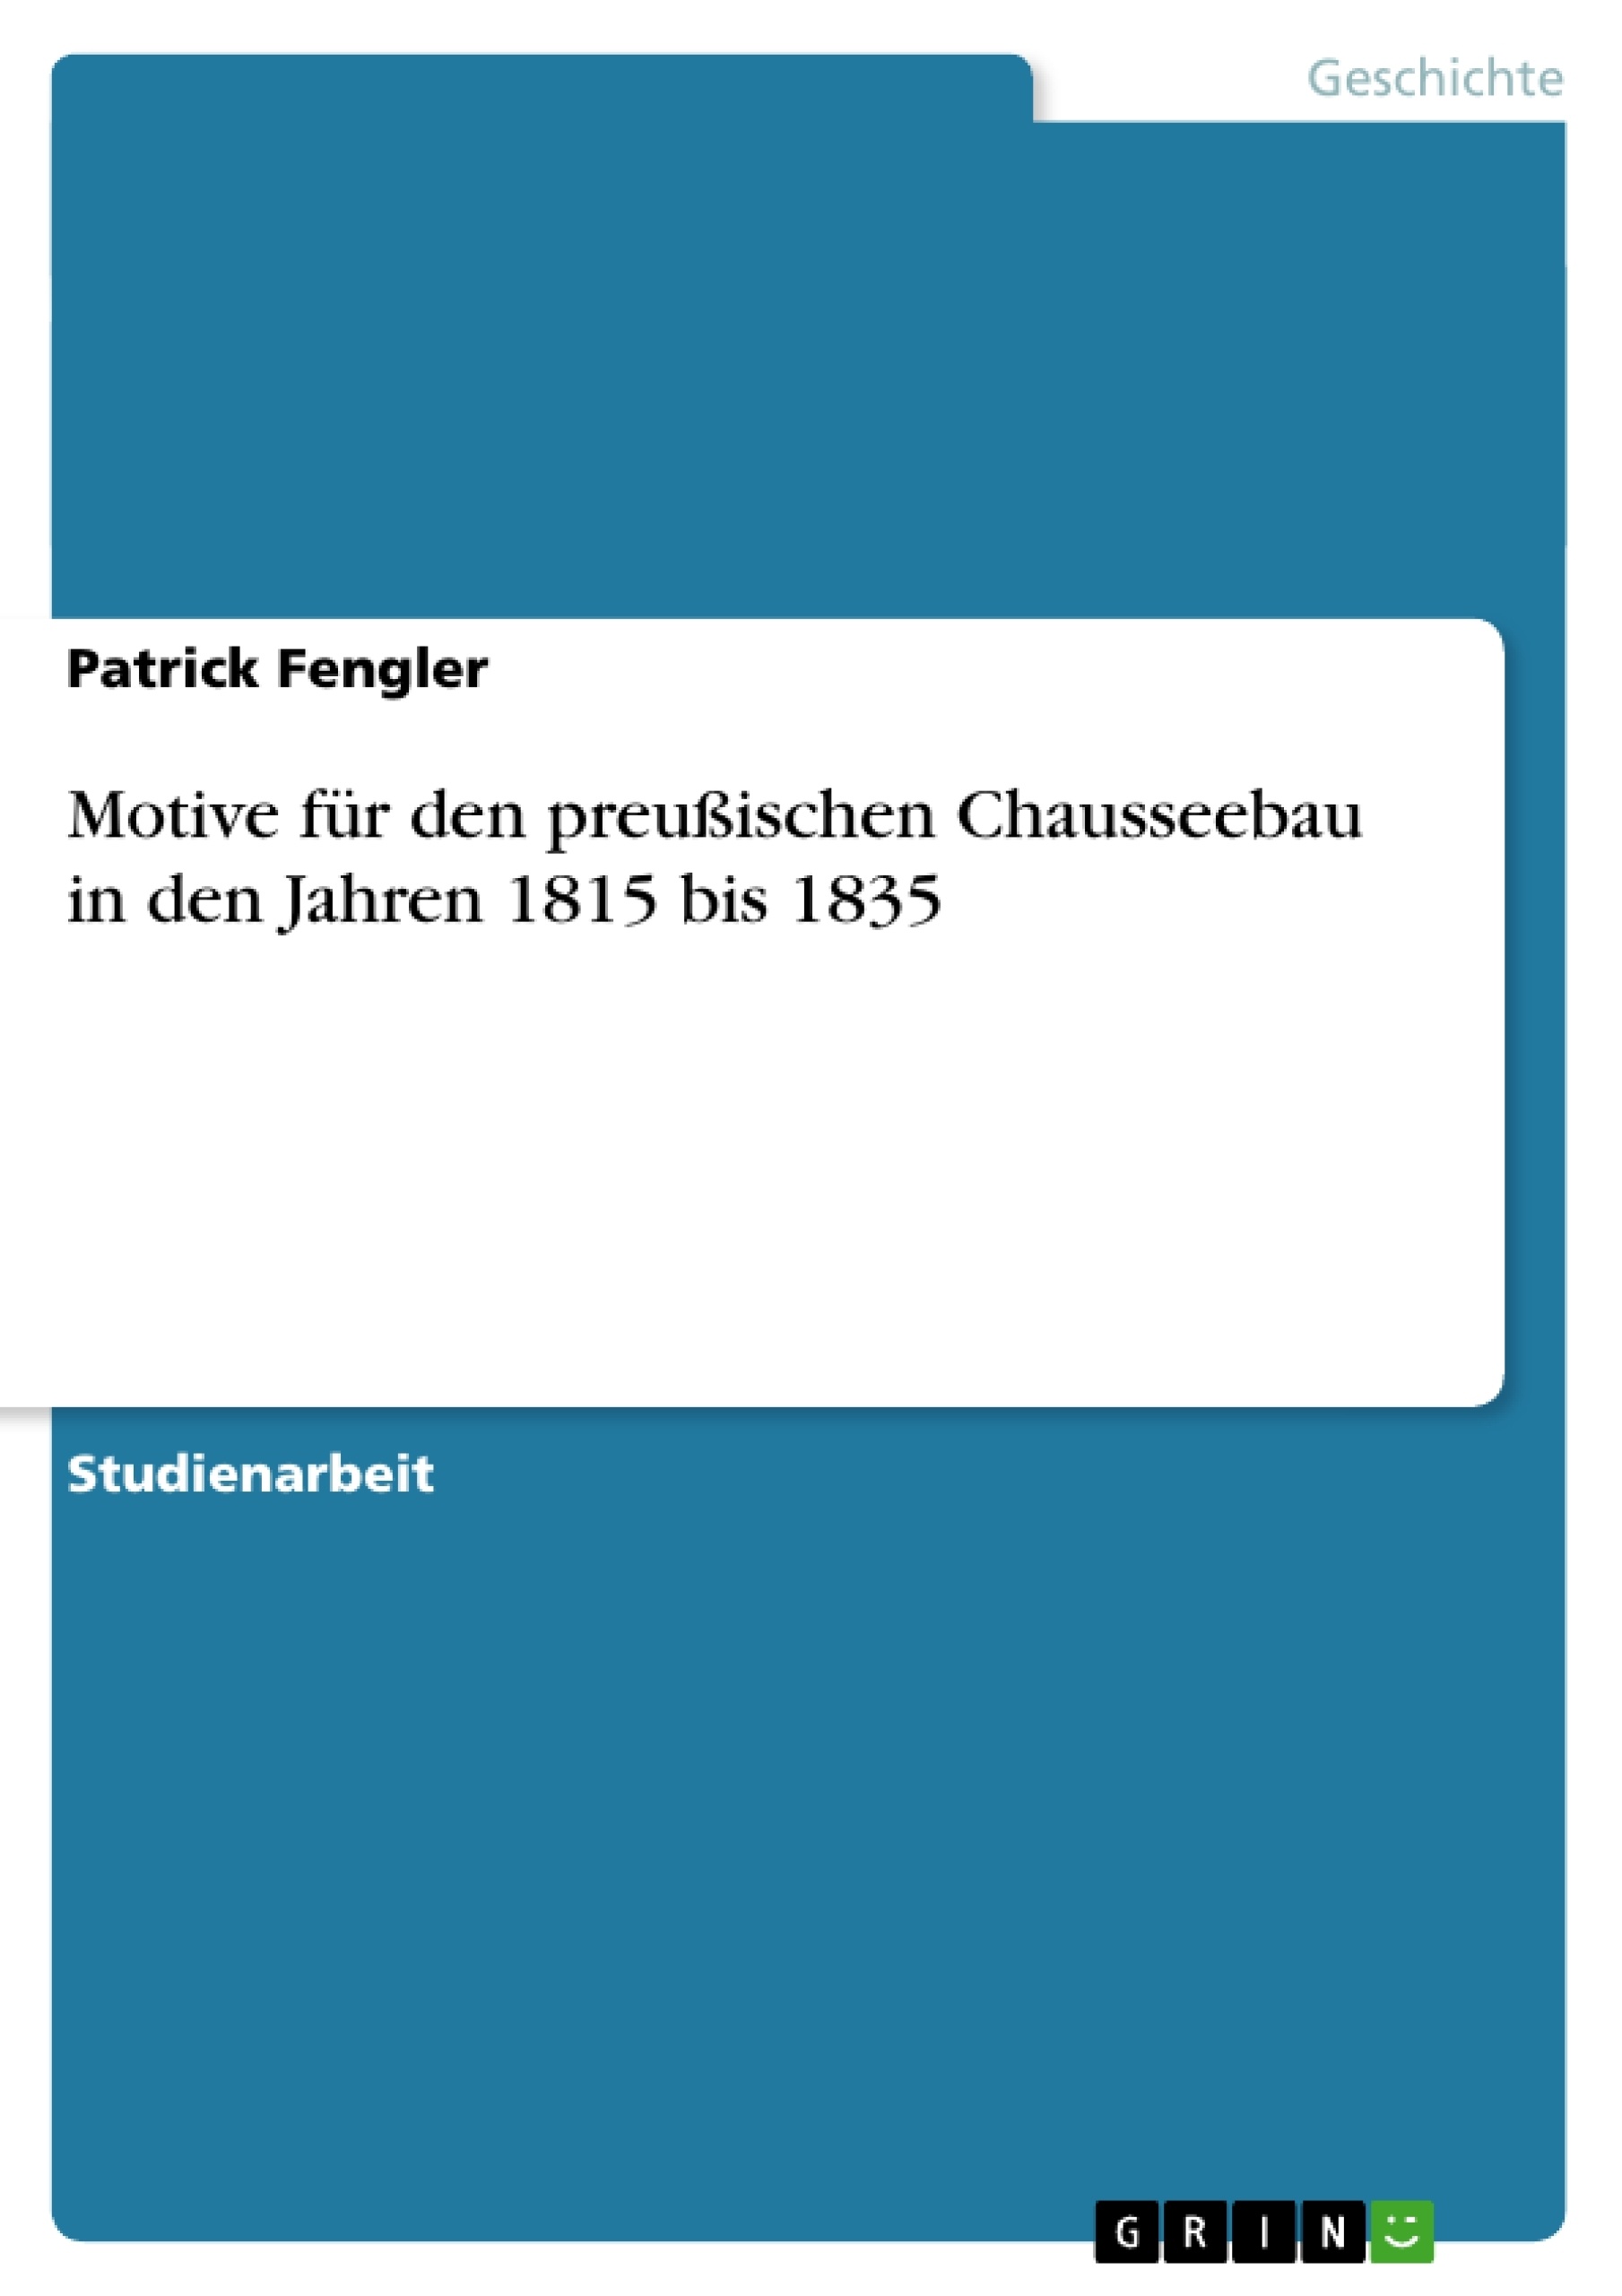 Title: Motive für den preußischen Chausseebau in den Jahren 1815 bis 1835